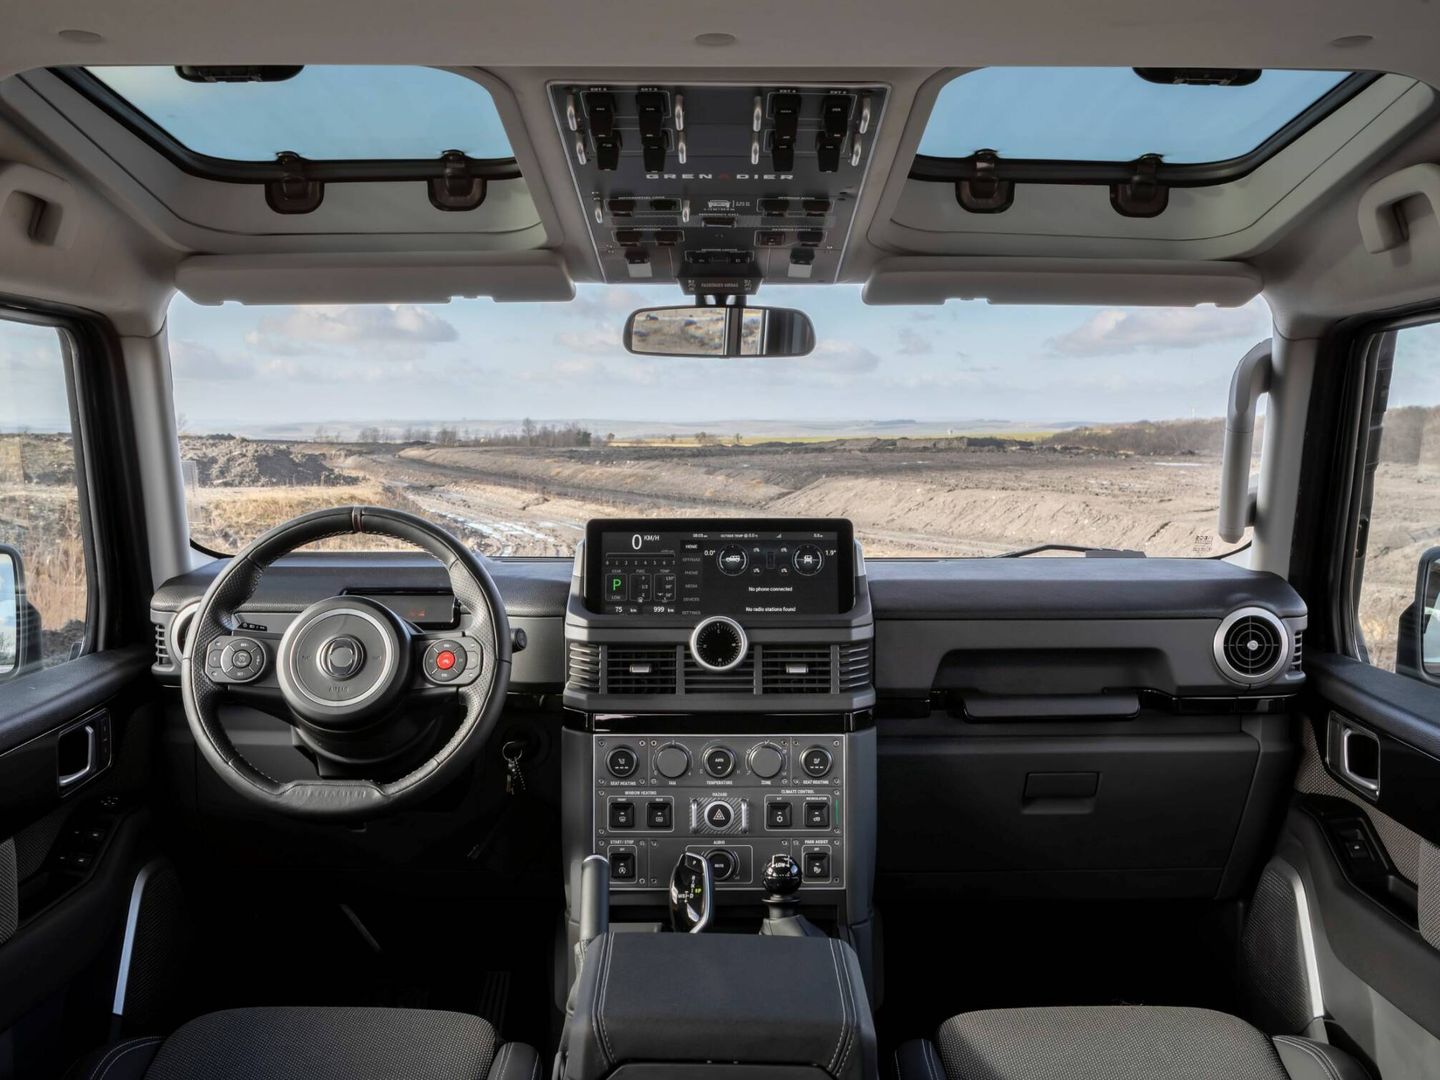 El clásico aspecto exterior de la carrocería contrasta con la avanzada tecnología del robusto interior.